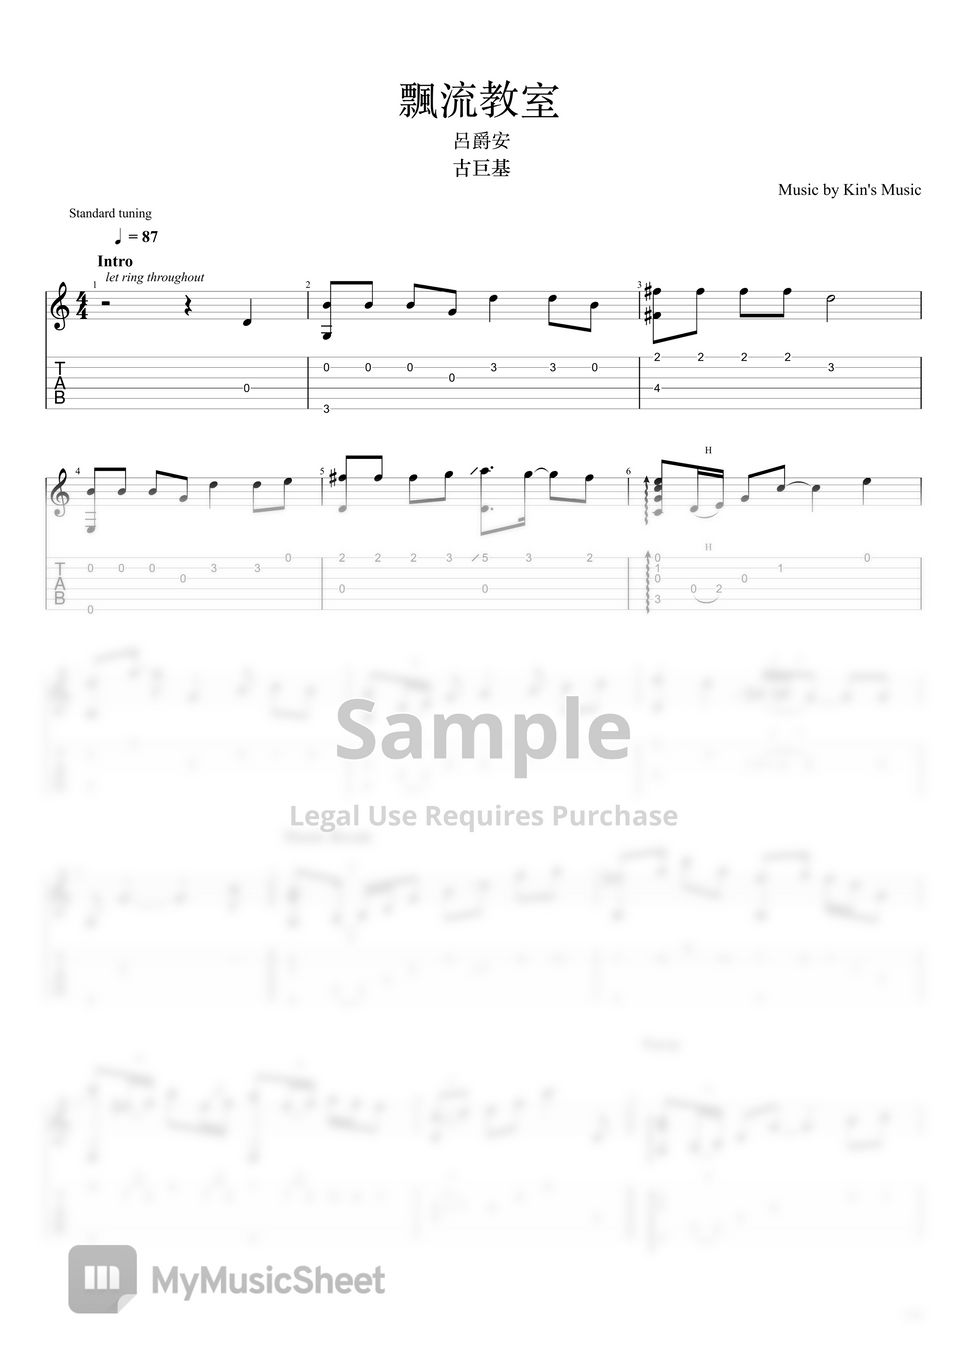 古巨基 Leo Ku & 呂爵安 Edan Lui - 飄流教室[Easy Guitar Fingerstyle For Beginner] by Kin's Music